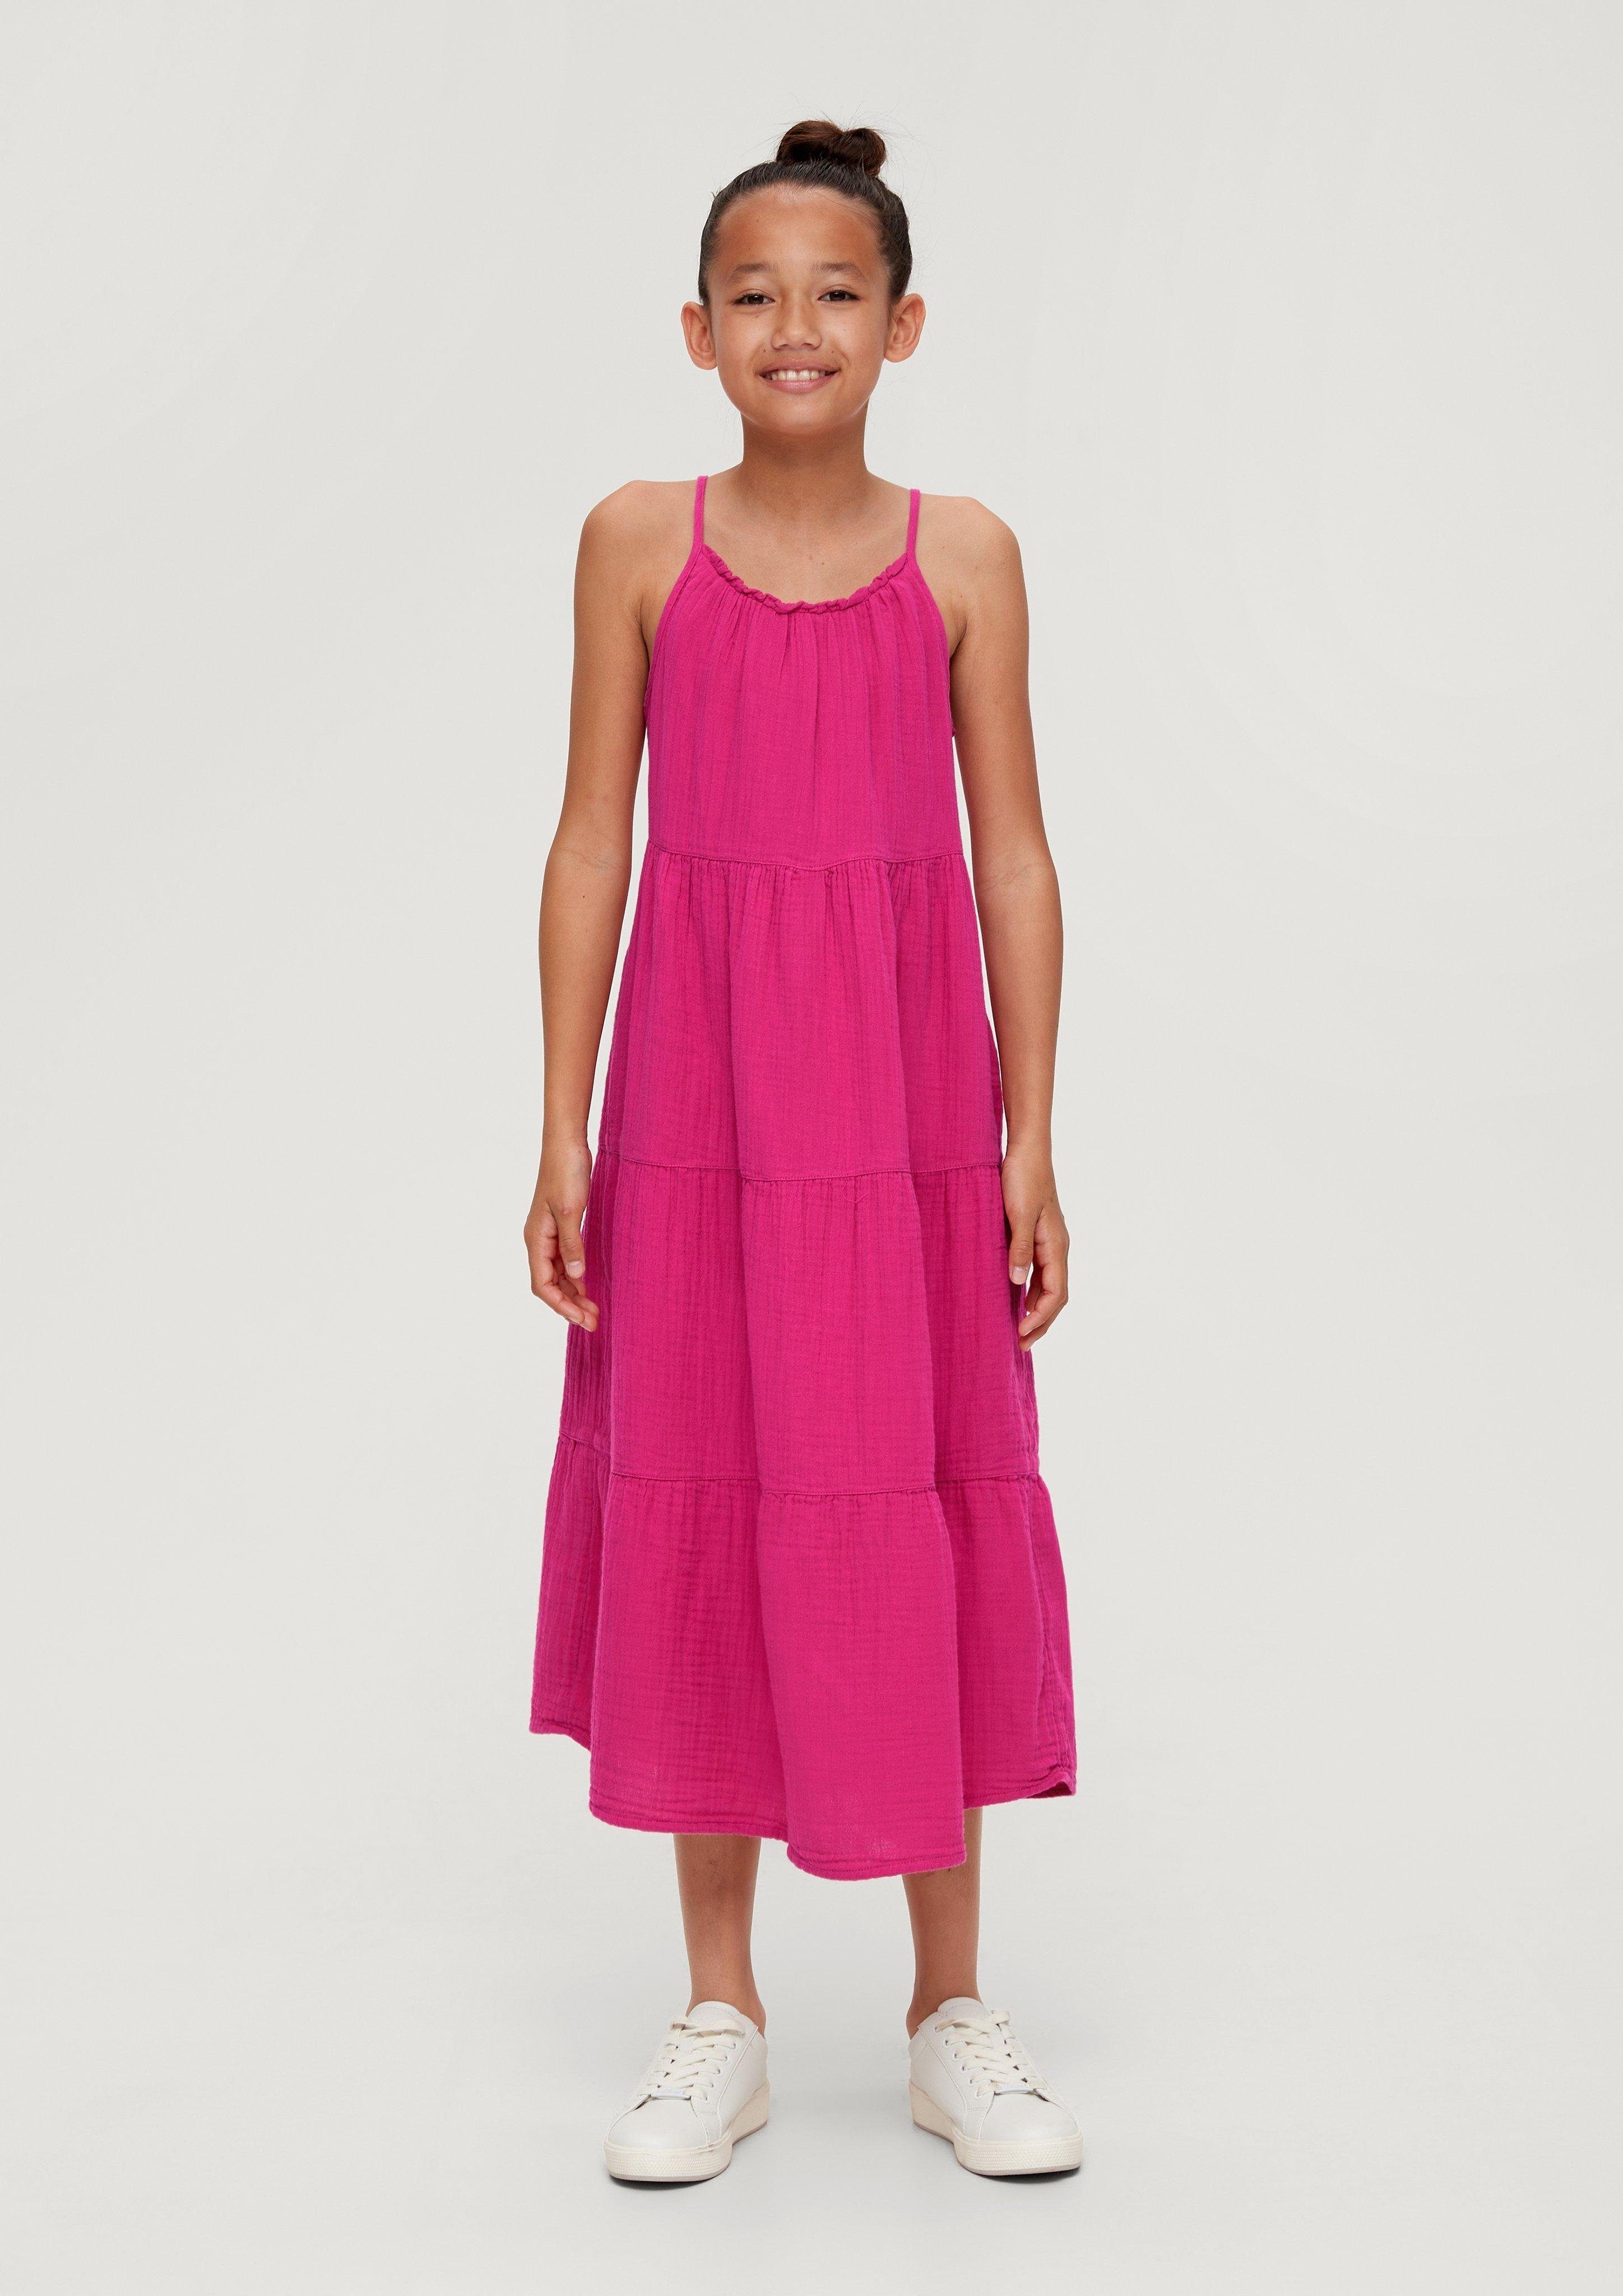 Stufendesign im Maxikleid Kleid pink s.Oliver Volants Raffung,